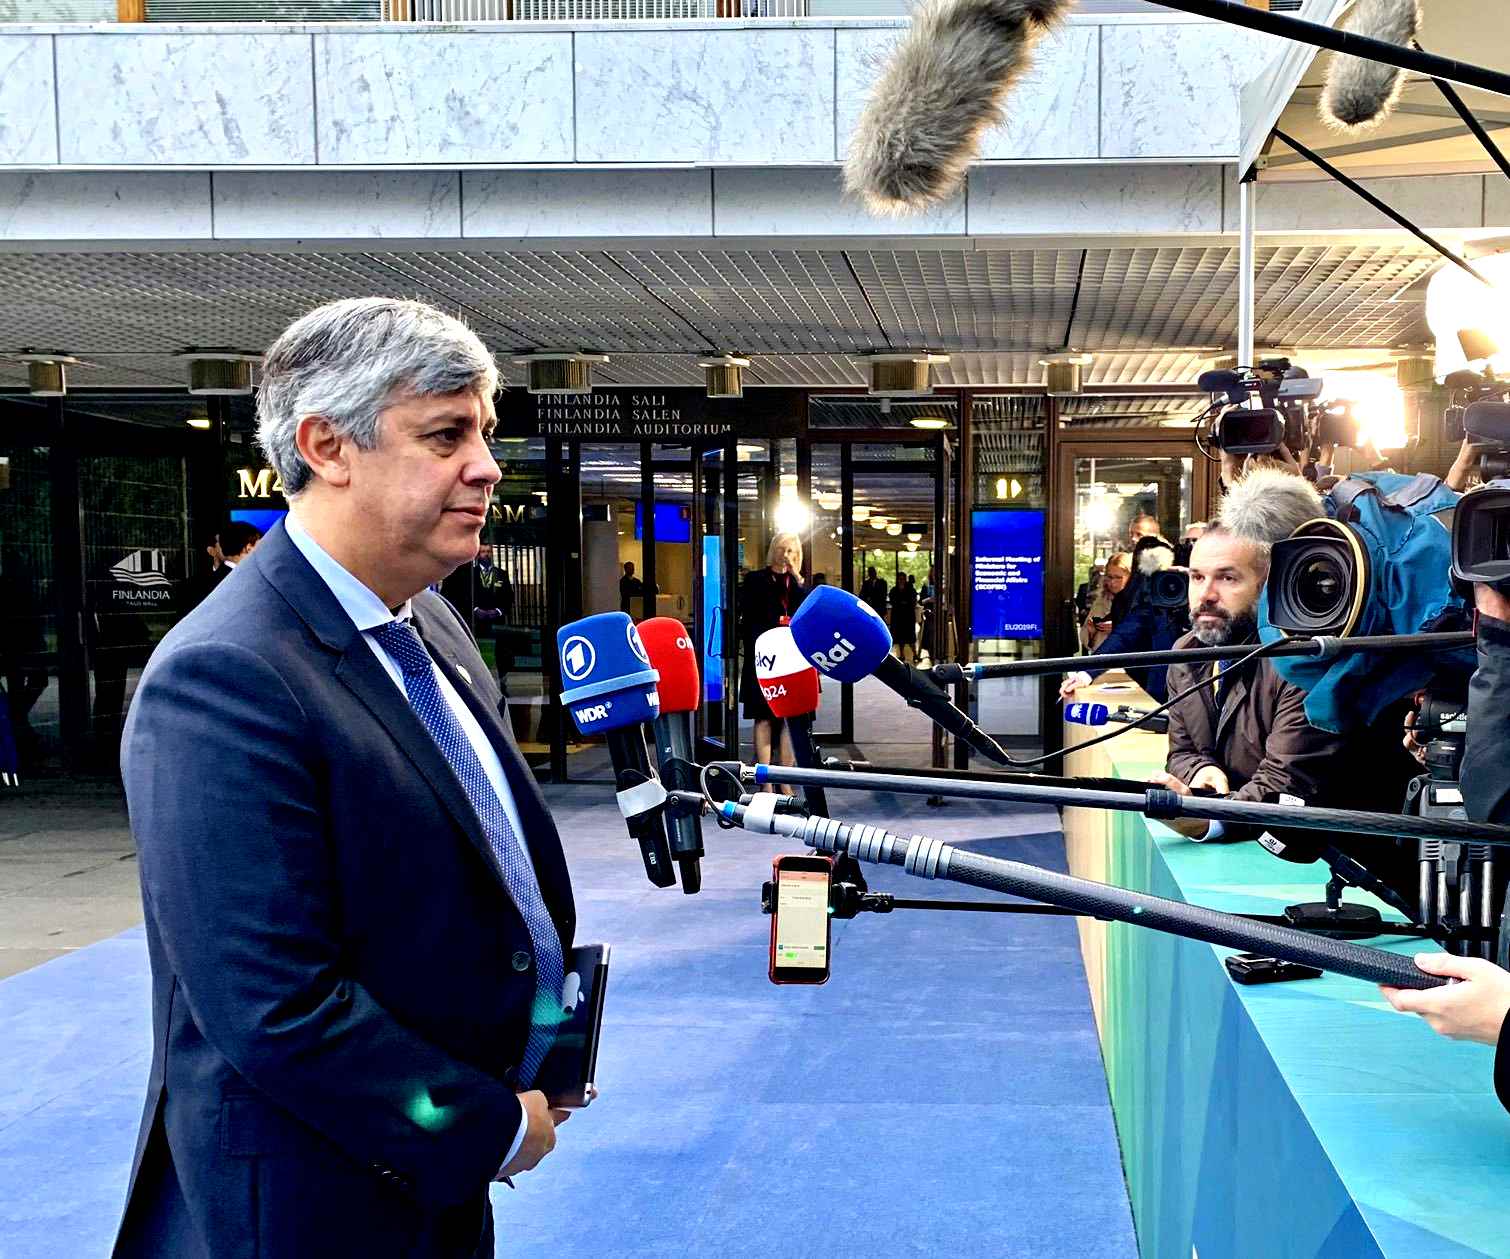 Fulmine a ciel sereno all’Eurogruppo, Centeno lascia presidenza